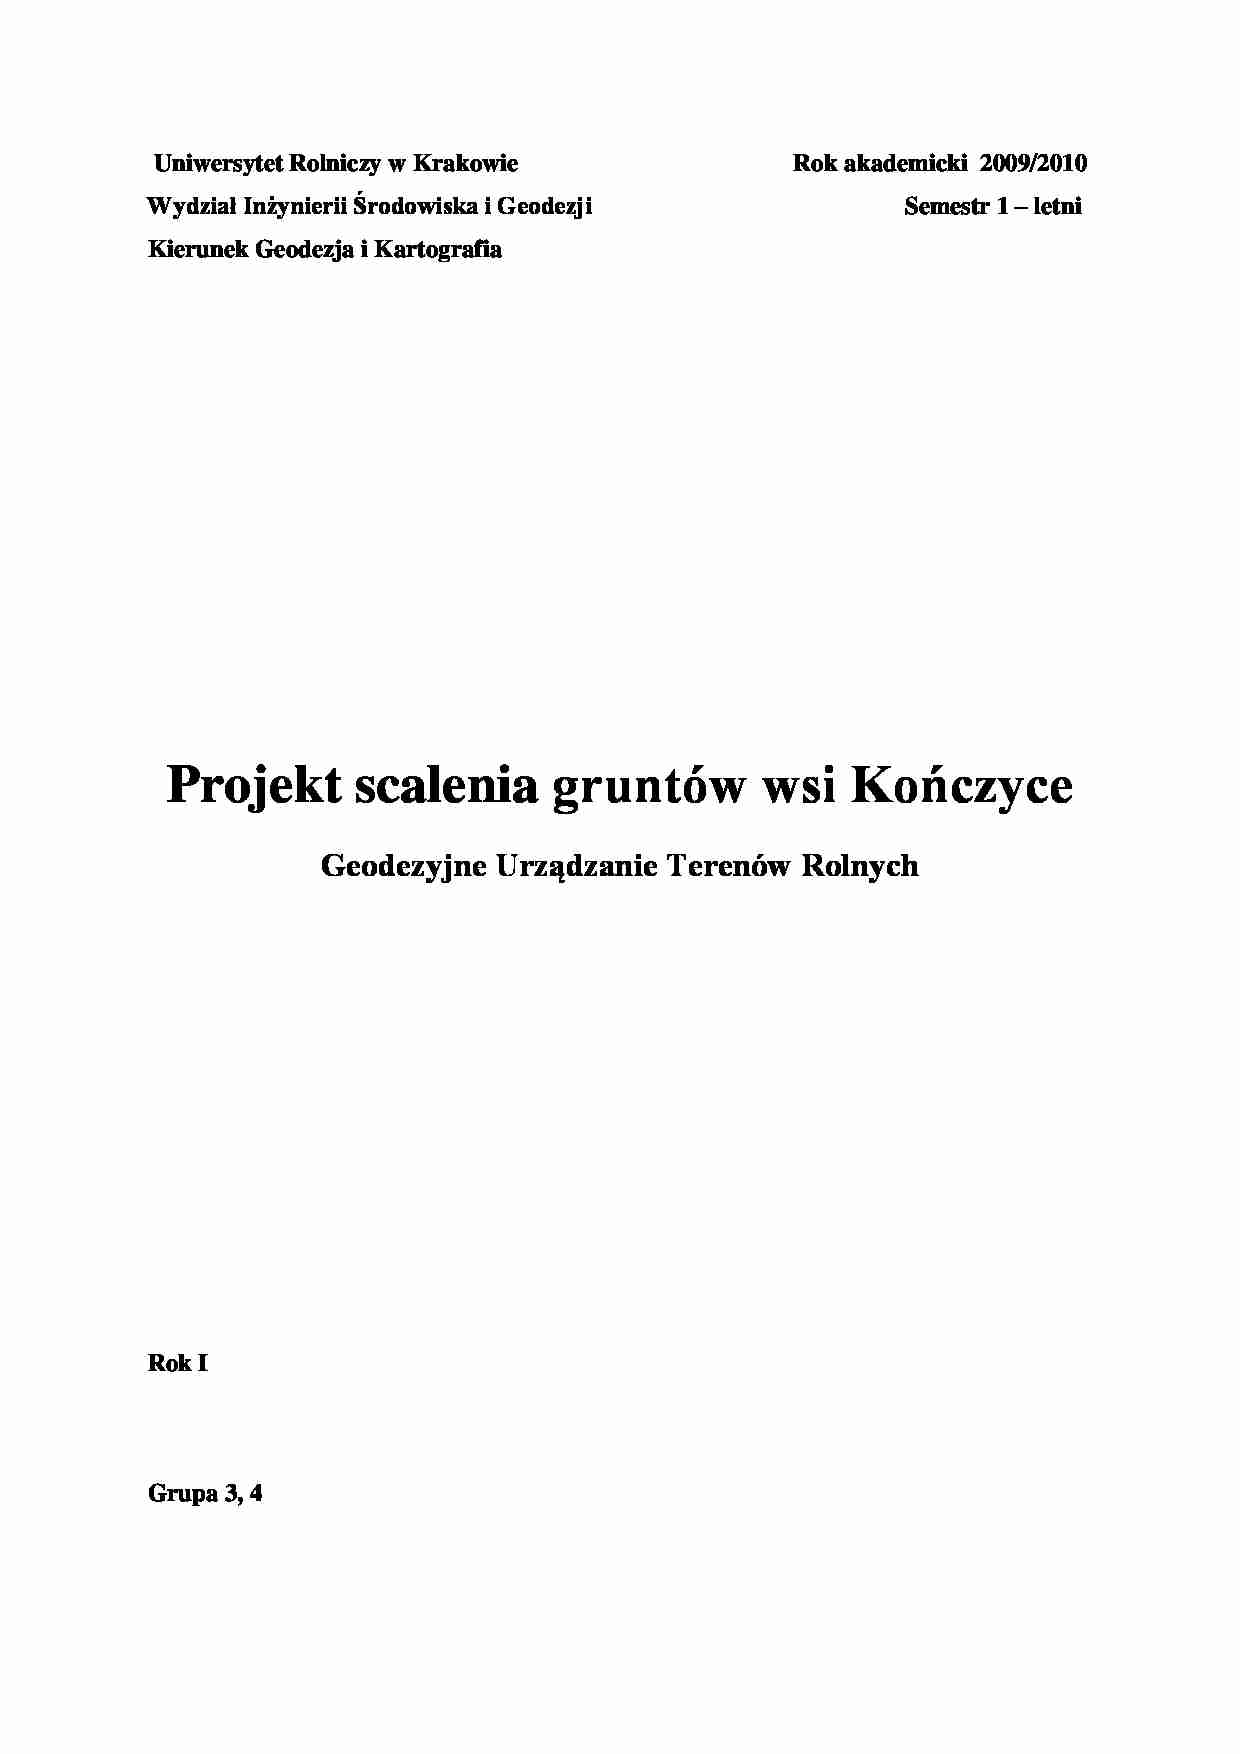 Projekt scalenia gruntów wsi Kończyce- opracowanie - strona 1